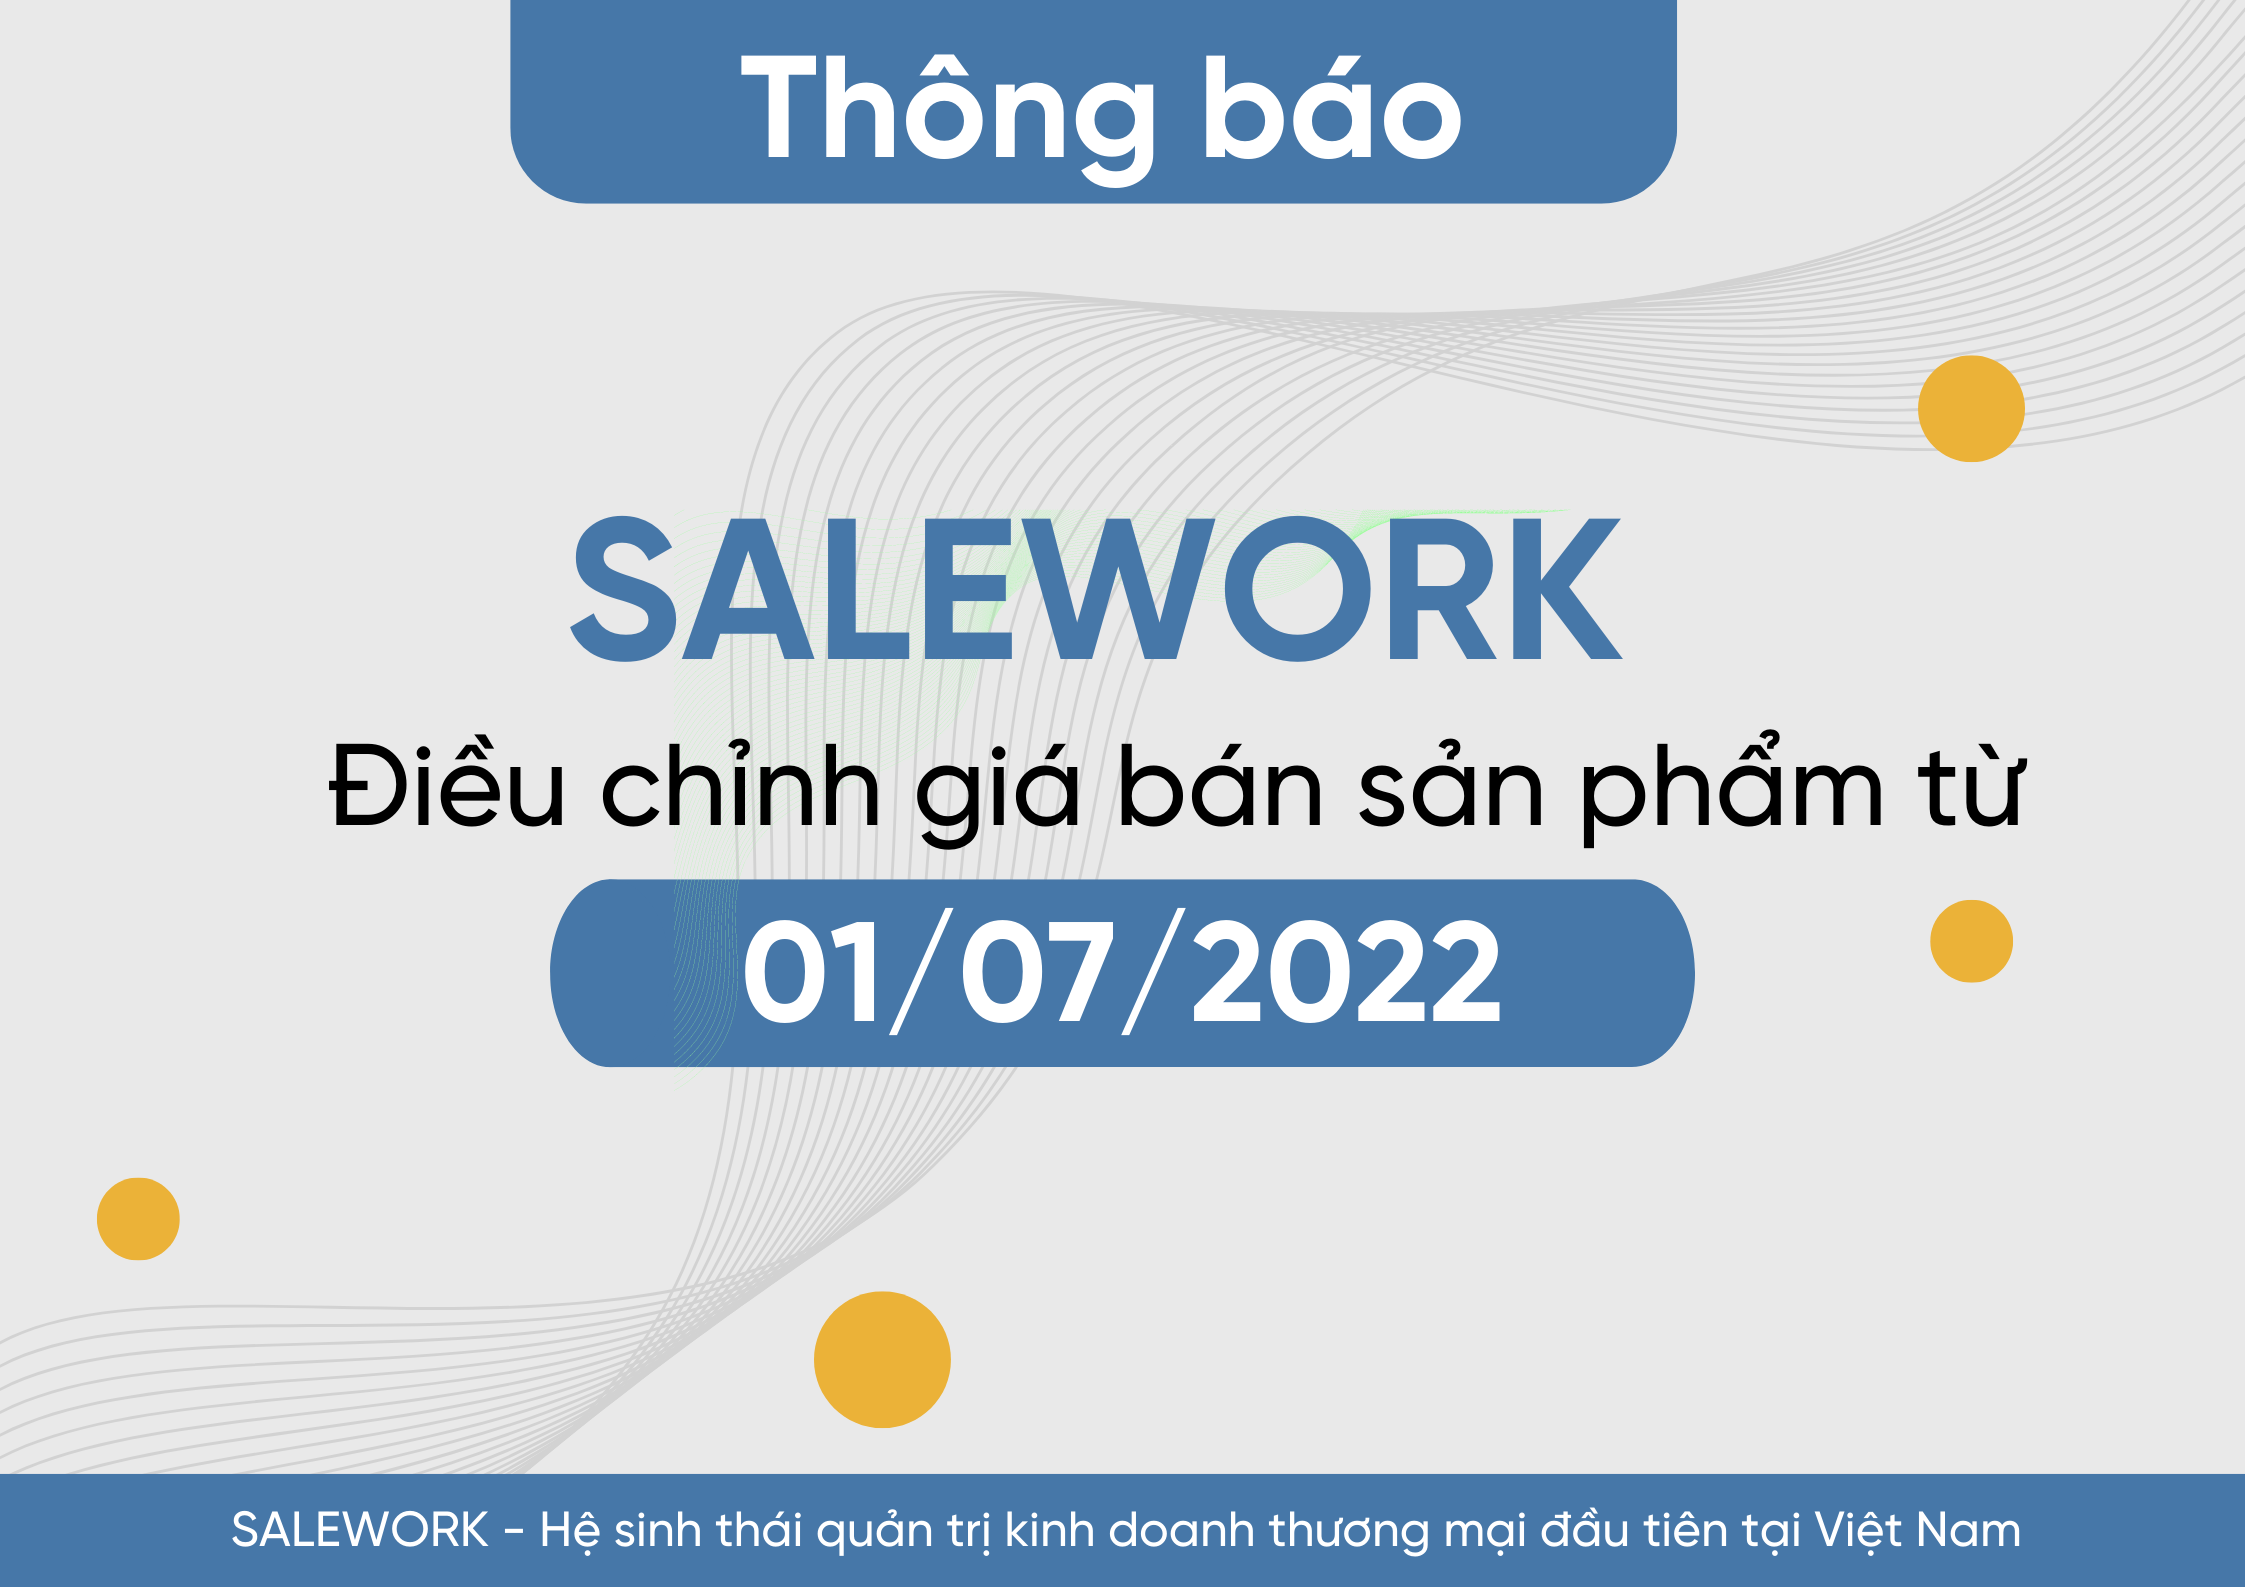 [Thông báo] Điều chỉnh giá bán và hình thức thanh toán các sản phẩm Salework từ ngày 01/07/2022 - 14